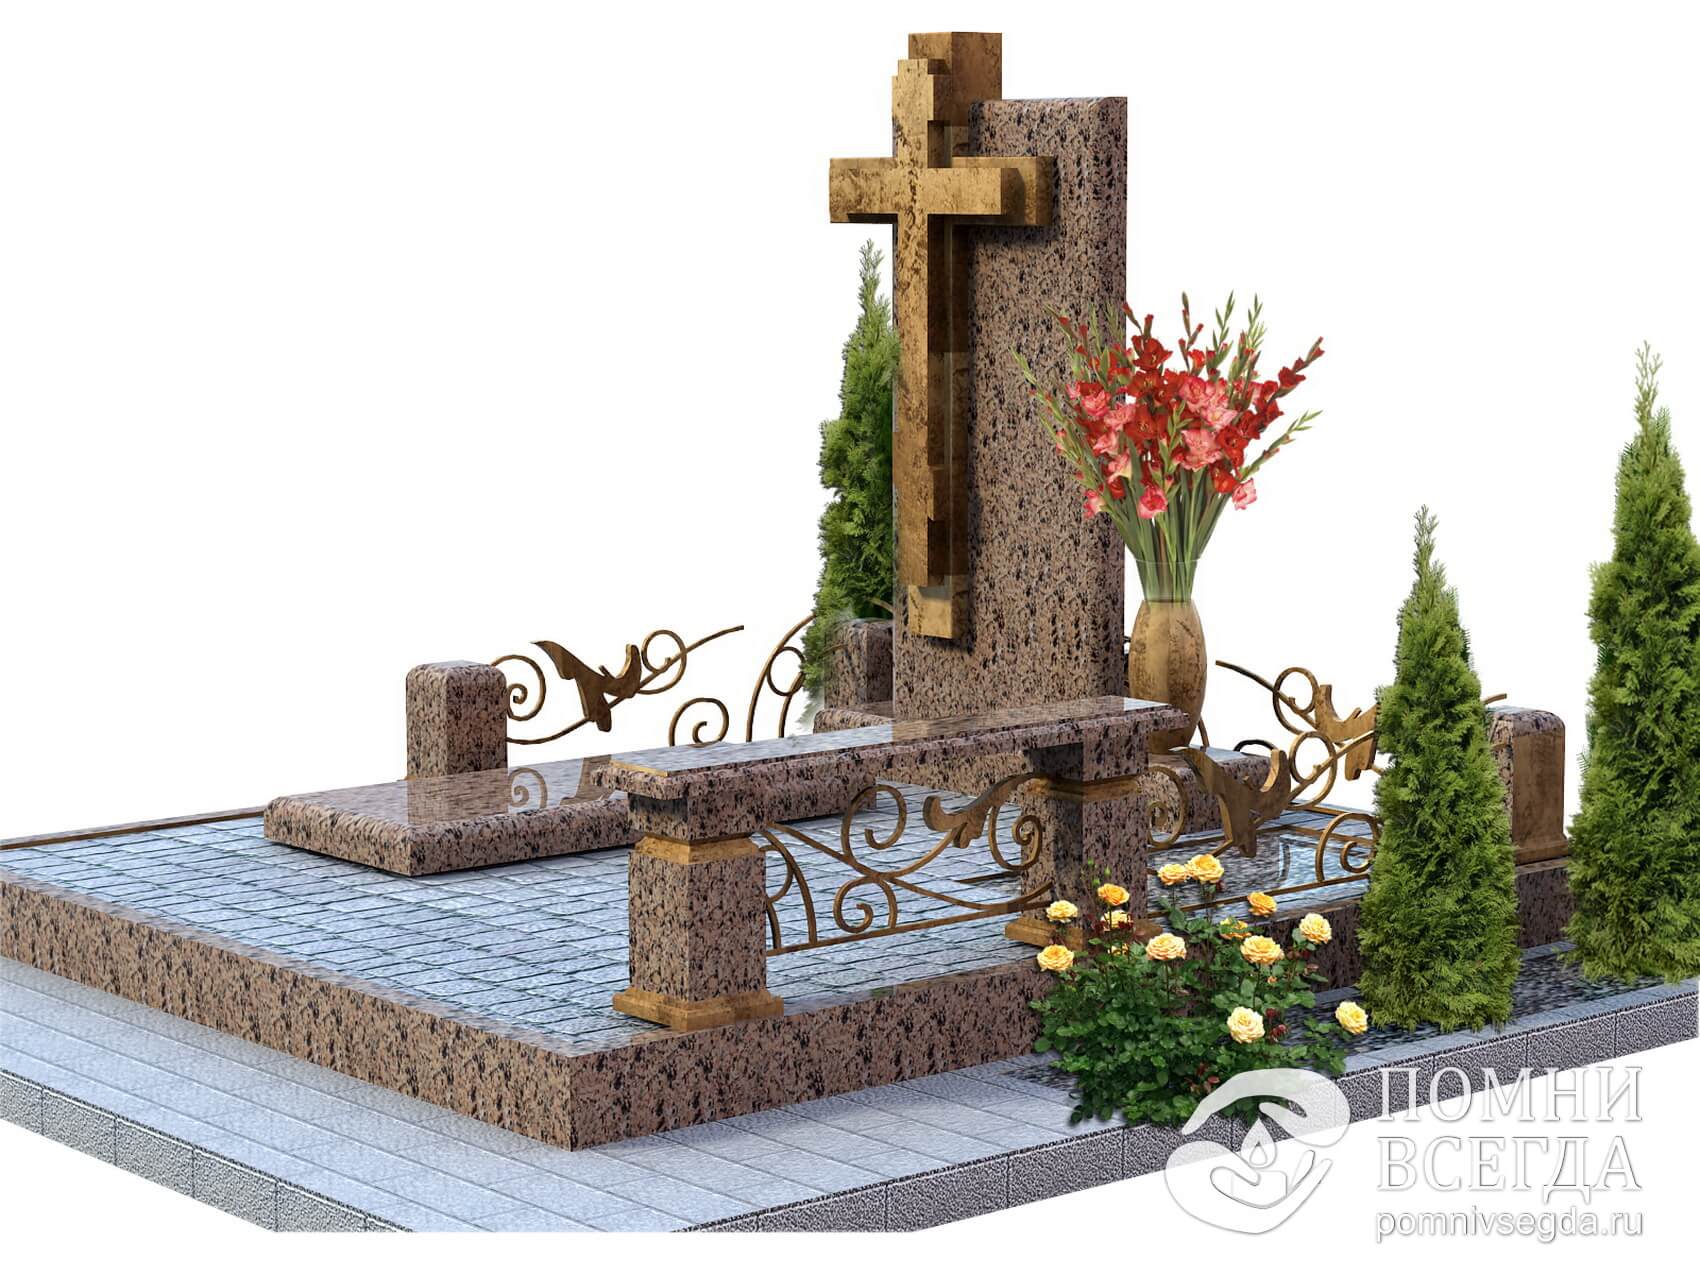 Памятник на одного покойного с фигурой креста и лавочка на комбинированной оградке